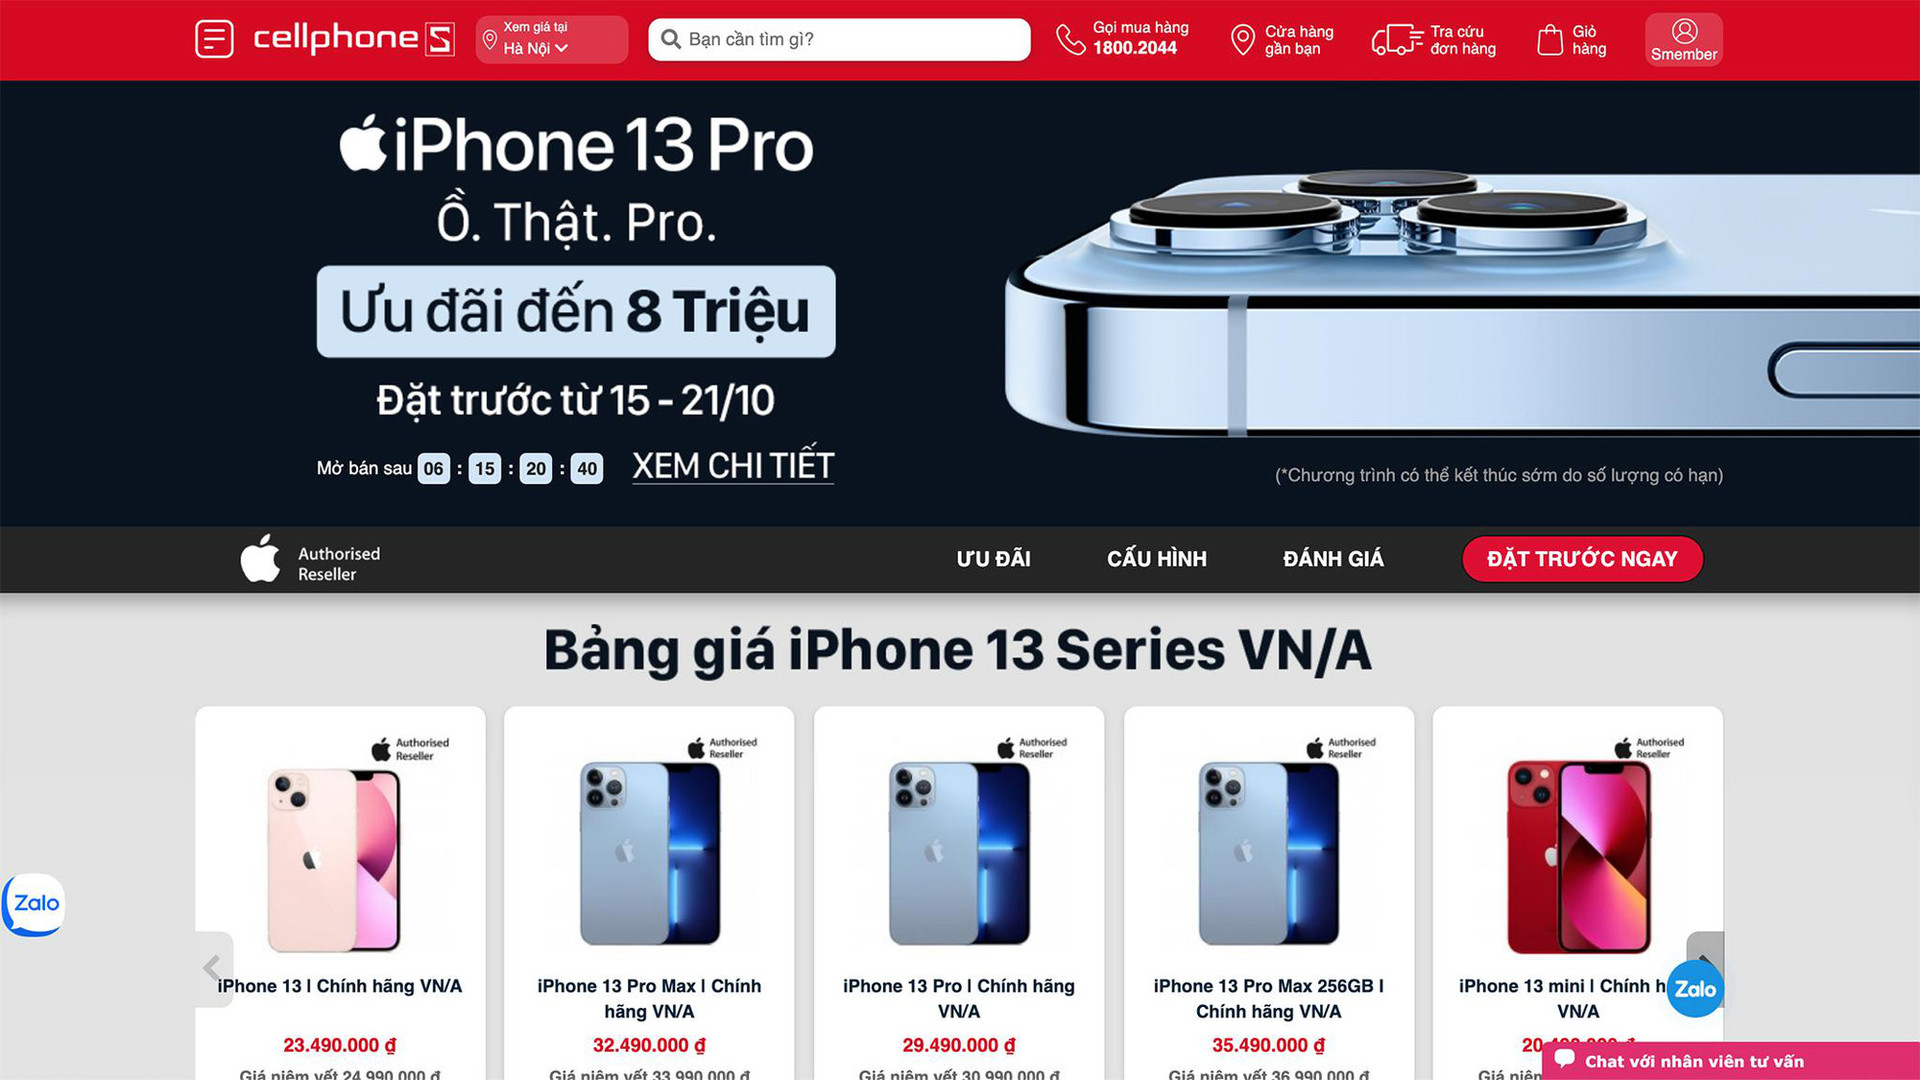 Công bố giá mở đặt trước iPhone 13 chính hãng tại Việt Nam - Ảnh 1.